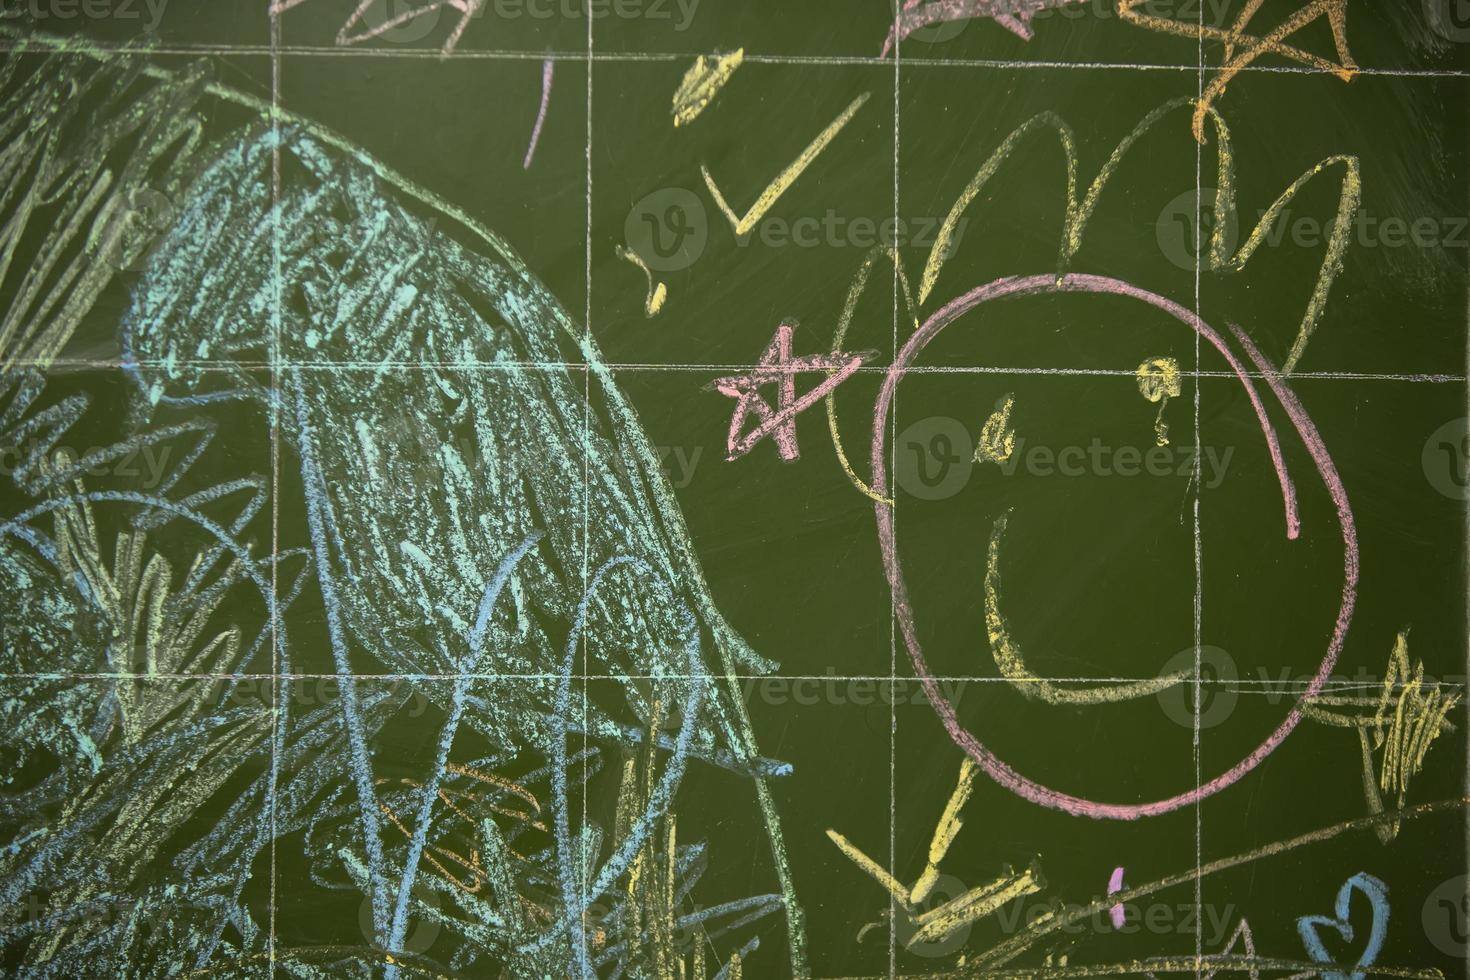 Zeichnungen von Kinder mit Kreide auf ein Schule Grün Tafel. foto